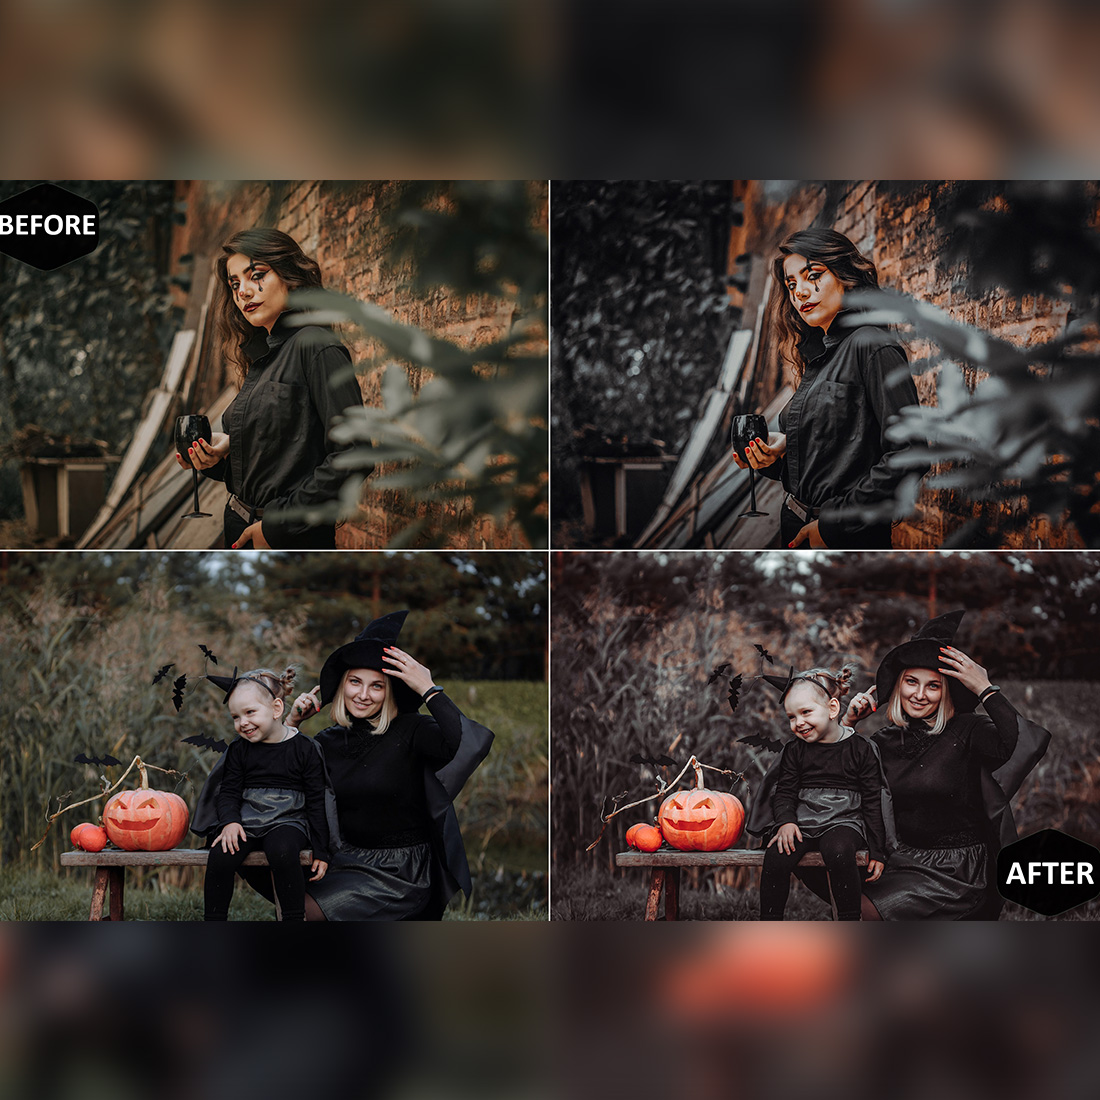 12 Day of the Dead Lightroom Presets, Halloween Mobile Preset, Black & Orange Desktop, Instagram Portrait Theme Lifestyle LR Filter DNG preview image.